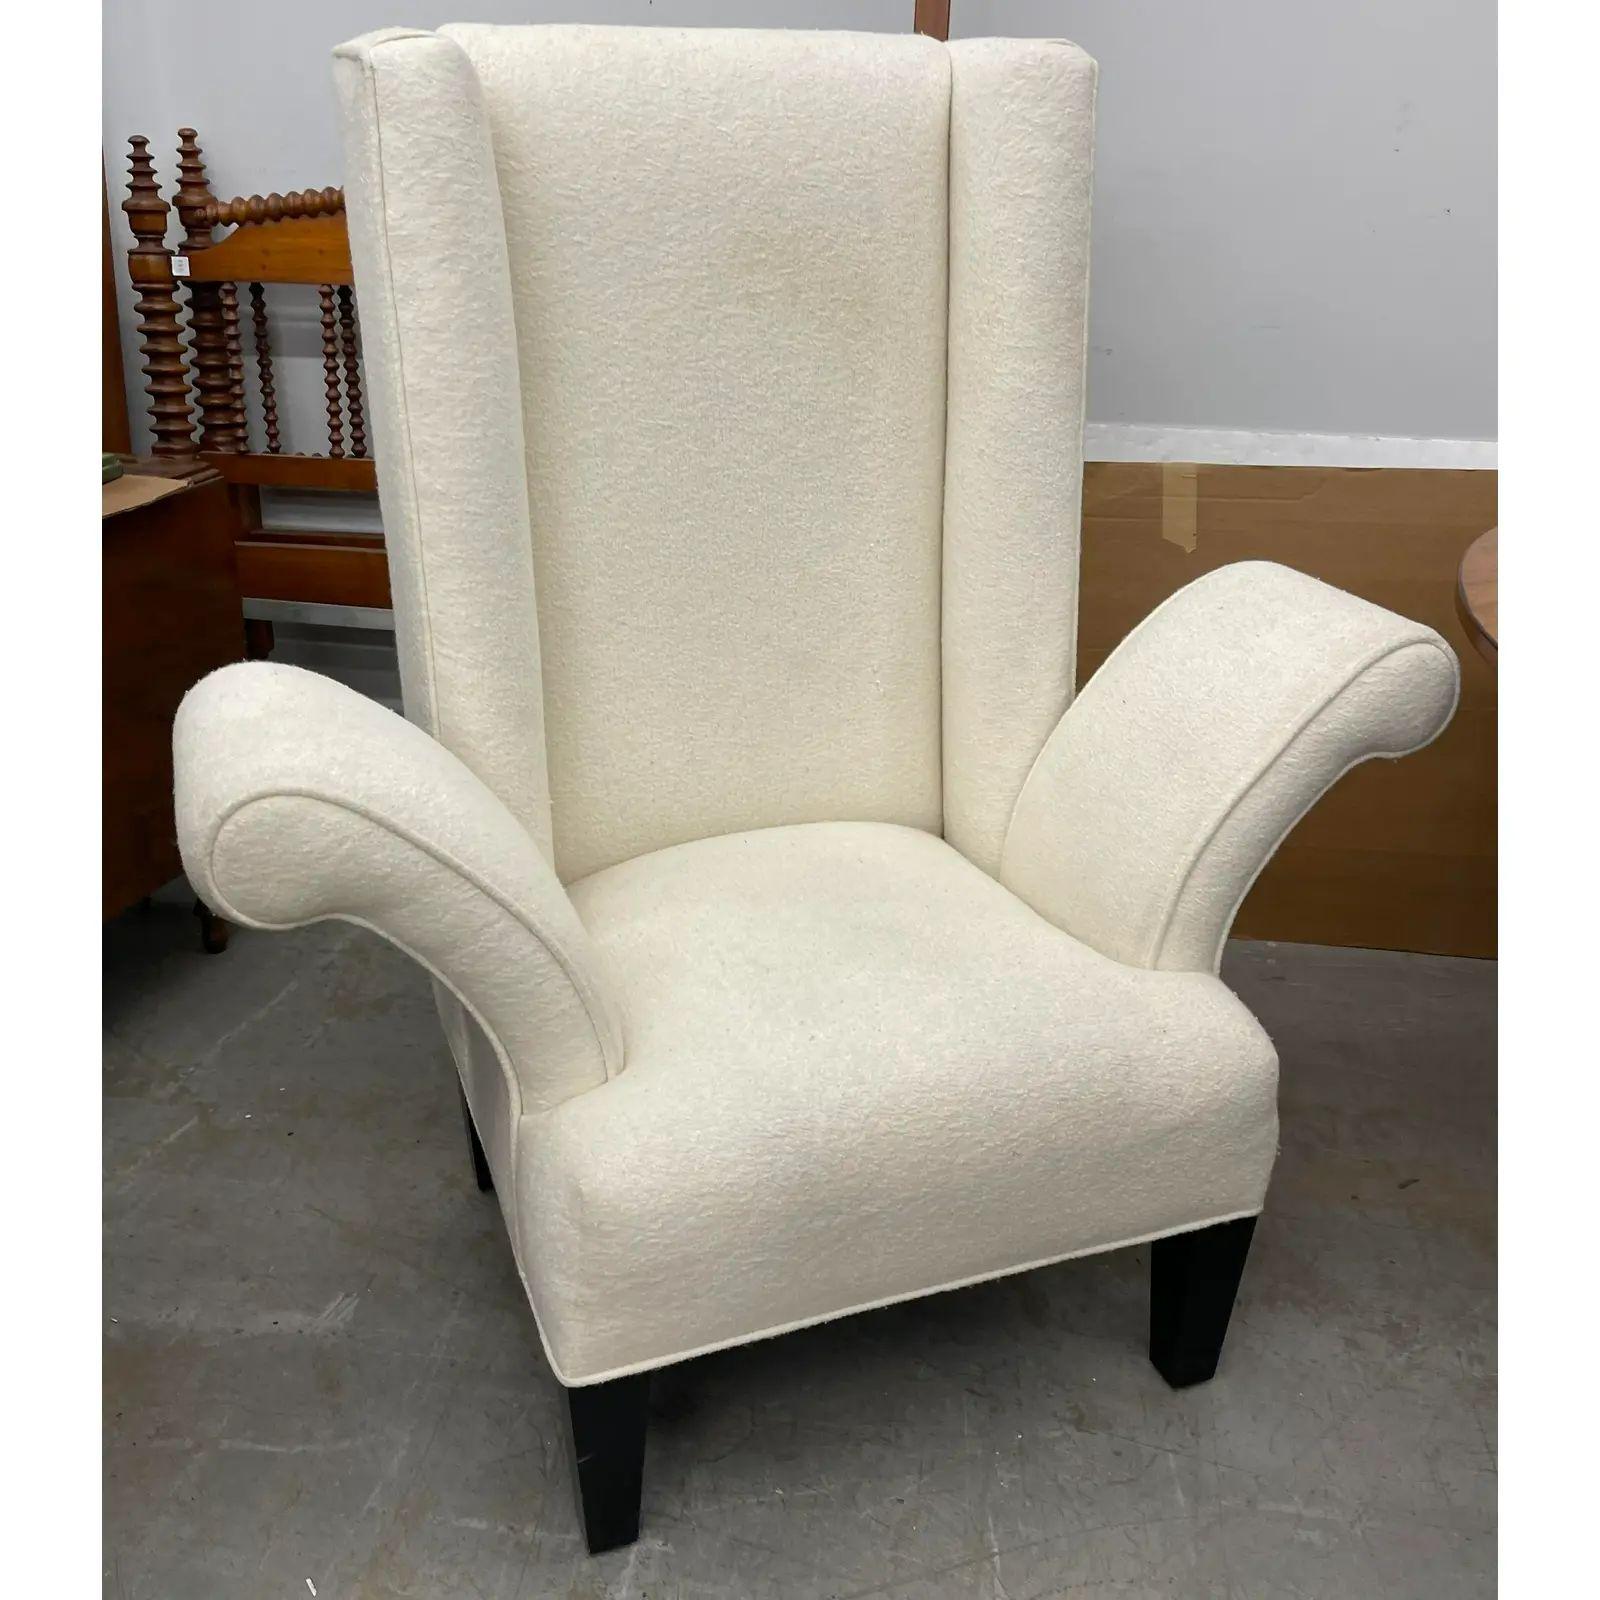 Mid Century Modern Flamboyant White Wingback Chair. Er zeichnet sich durch exzentrisch ausladende Armlehnen und eine elegante weiße Polsterung aus.

Zusätzliche Informationen: 
MATERIALIEN: Stoff, Holz
Farbe: Weiß
Zeitraum: 1960s
Stile: Moderne